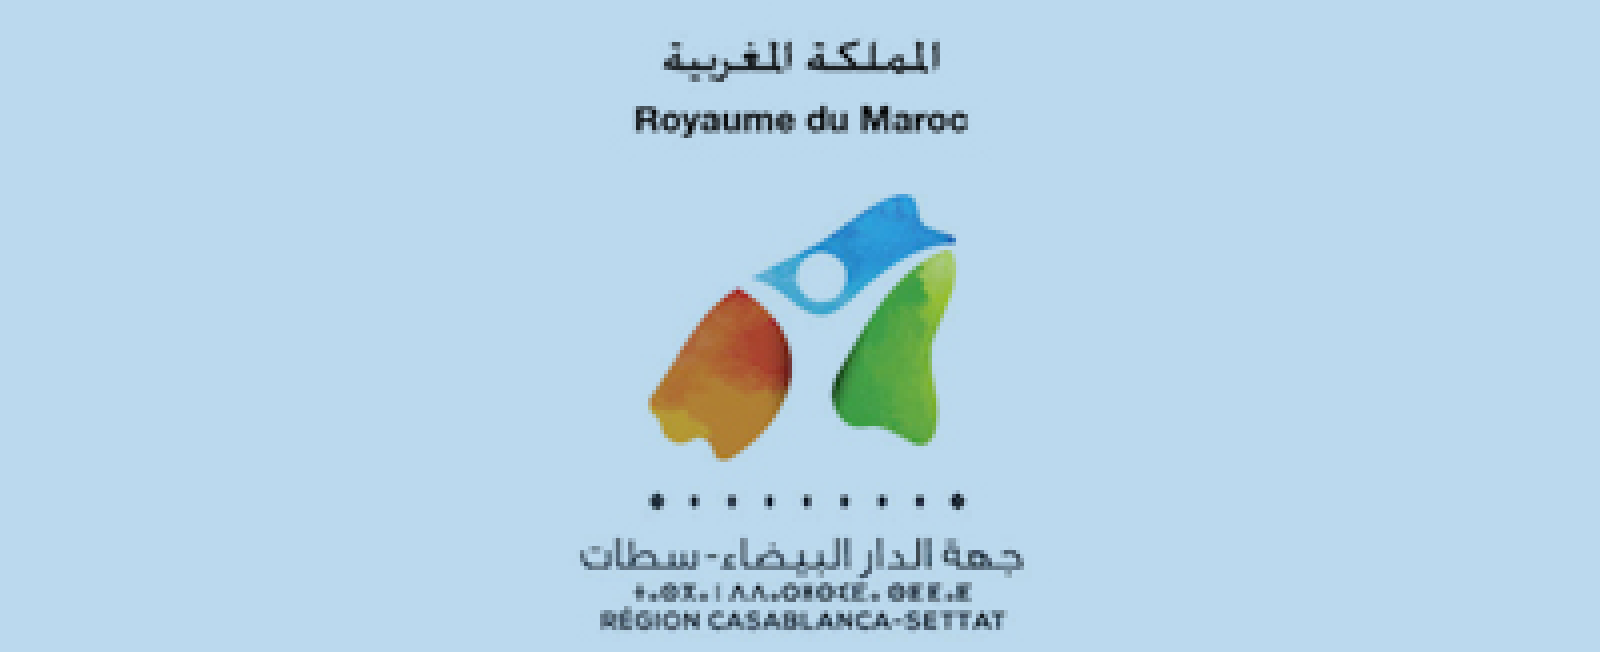 توقيع اتفاقية شراكة من أجل إنشاء المنطقة الصناعية "أهل لغلام" بعمالة مقاطعات سيدي البرنوصي